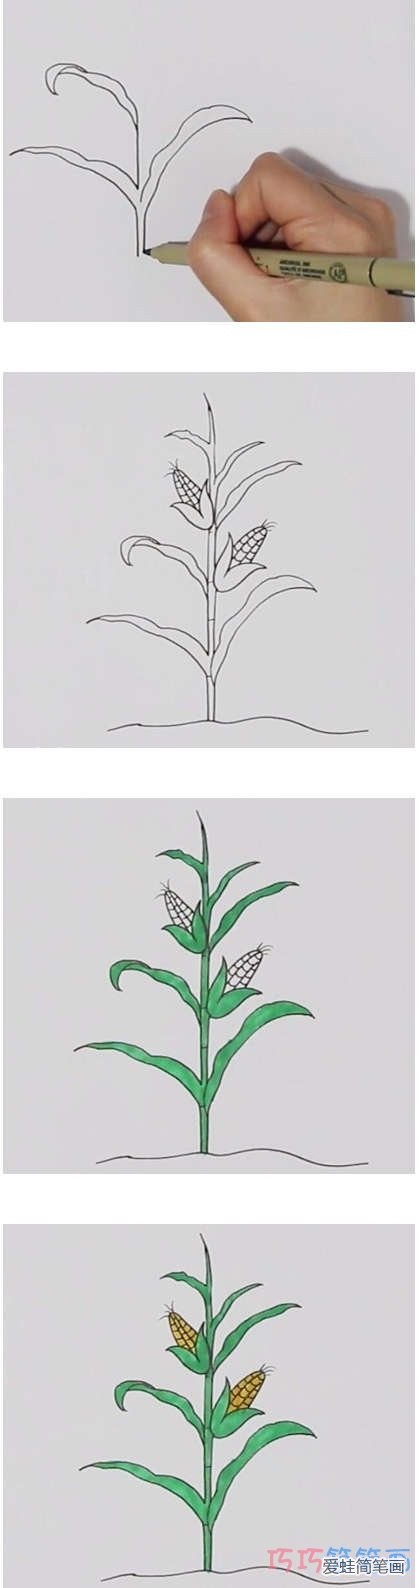 手绘一棵玉米简笔画